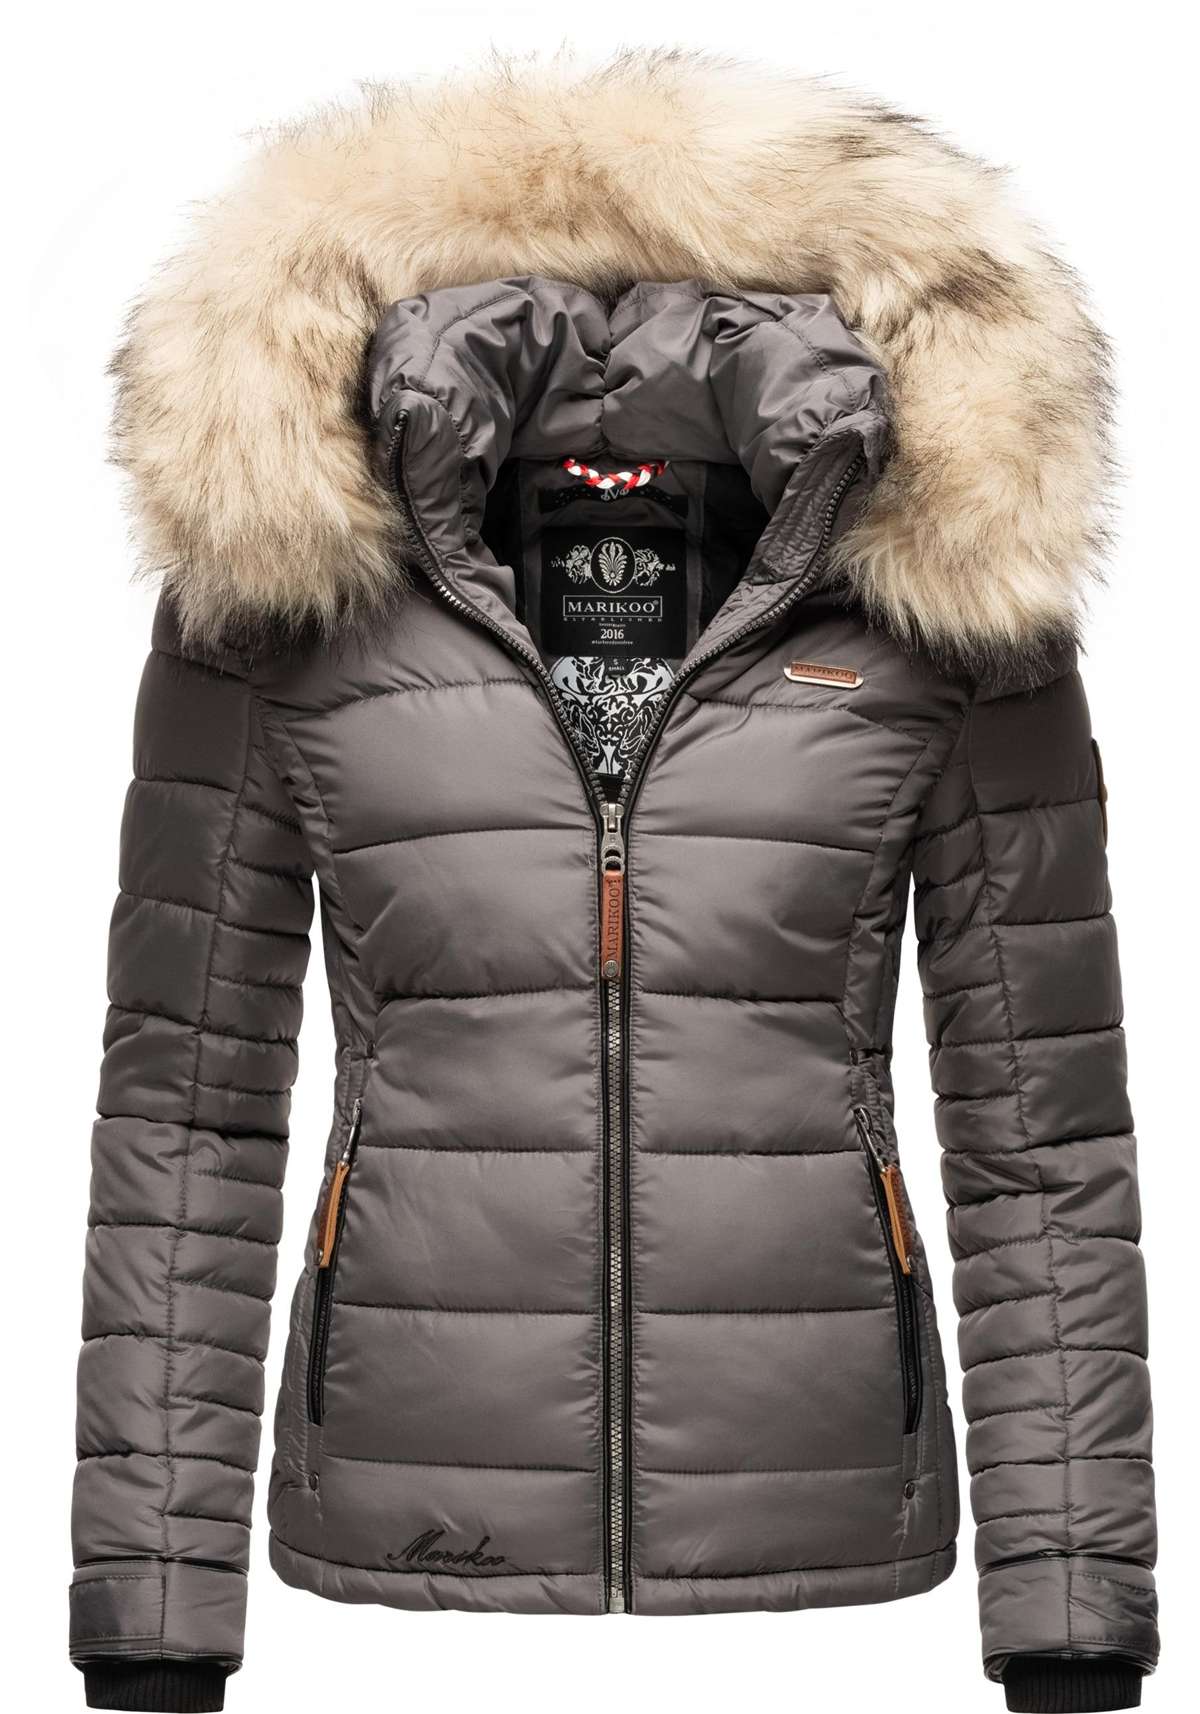 Зимняя куртка с капюшоном, зимняя стеганая куртка со съемным искусственным мехом.